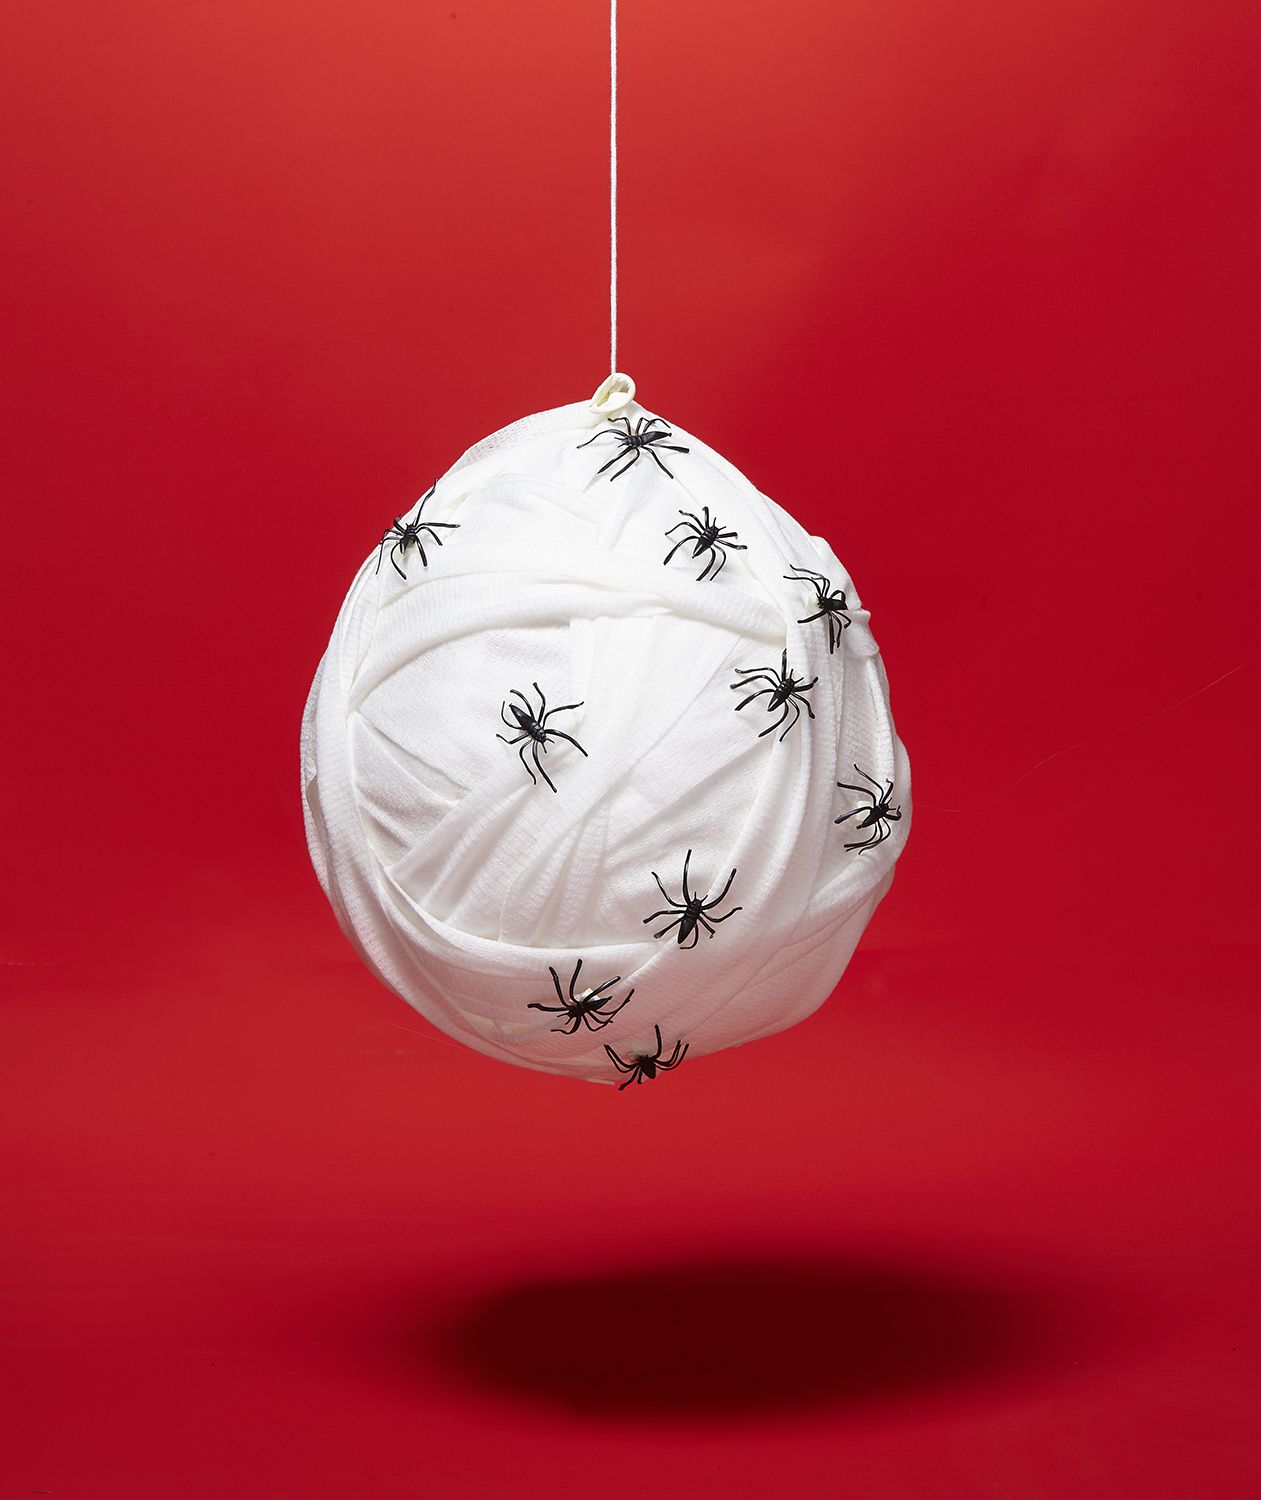 DIY Halloween Deko-Ideen: Spinnennest aus mit Reis gefülltem Ballon in Gaze umwickelt